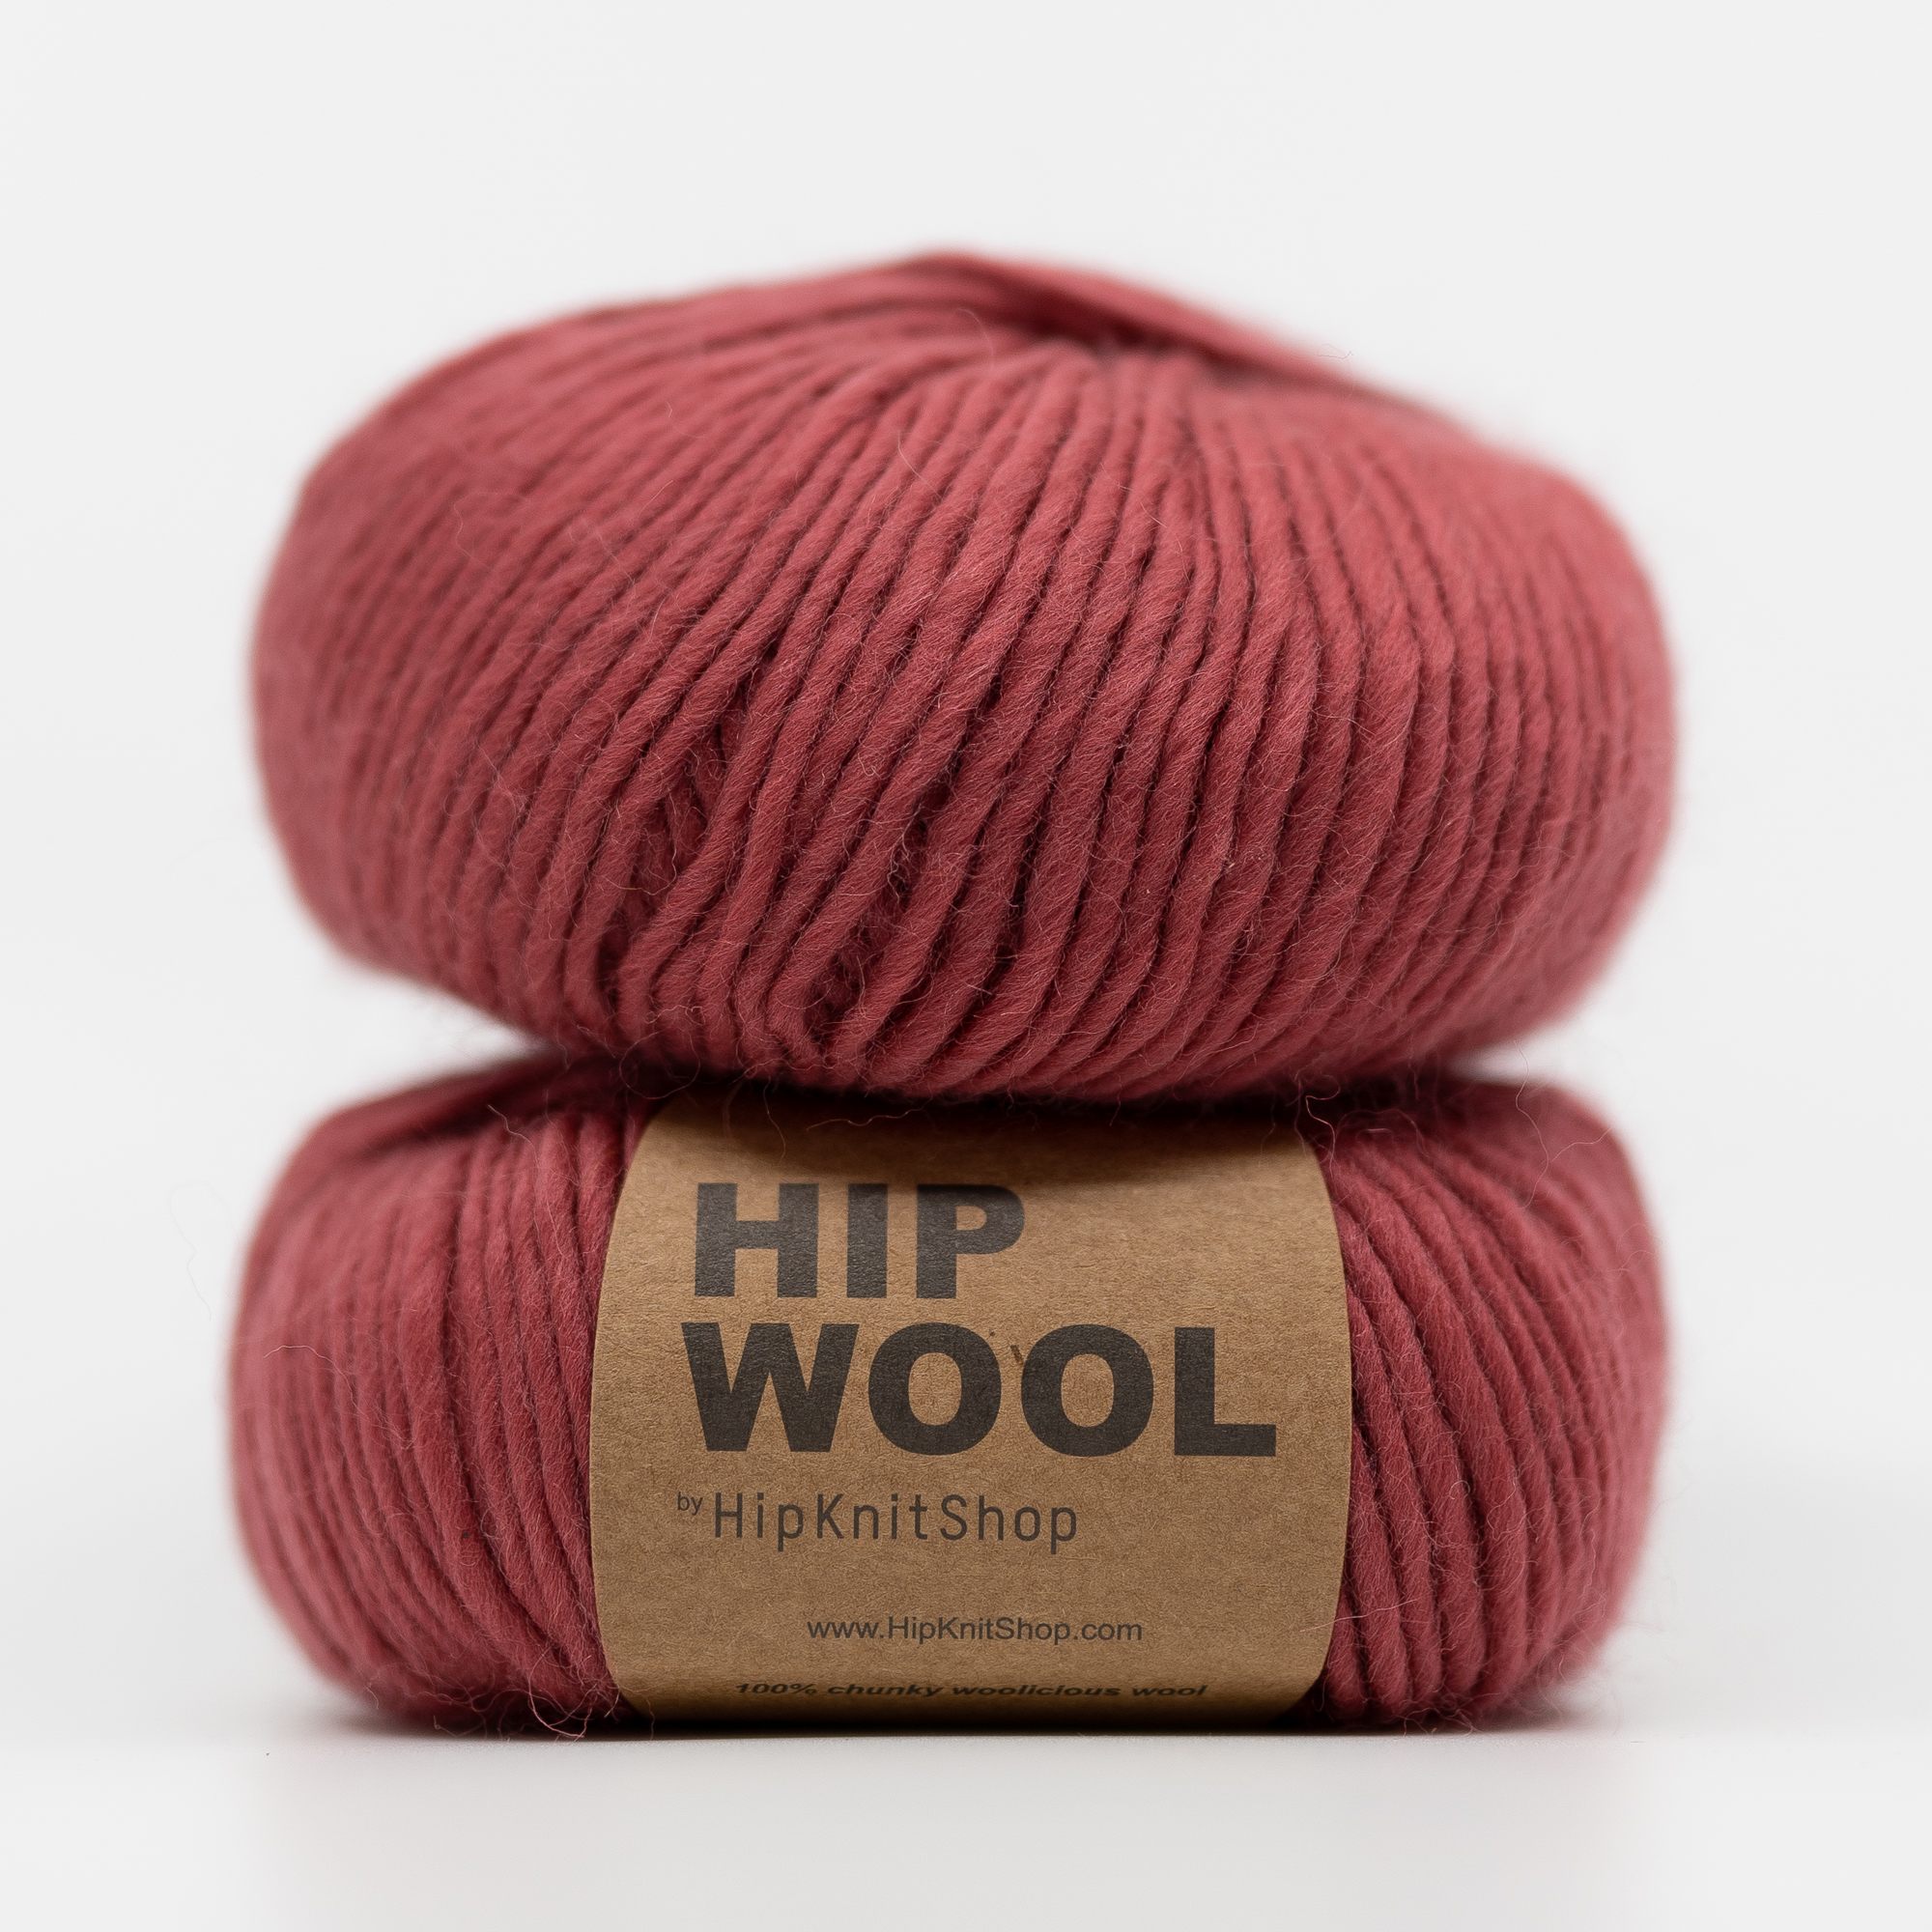  - Rhubarb | Pale red yarn | Hip Wool - by HipKnitShop - 30/05/2021